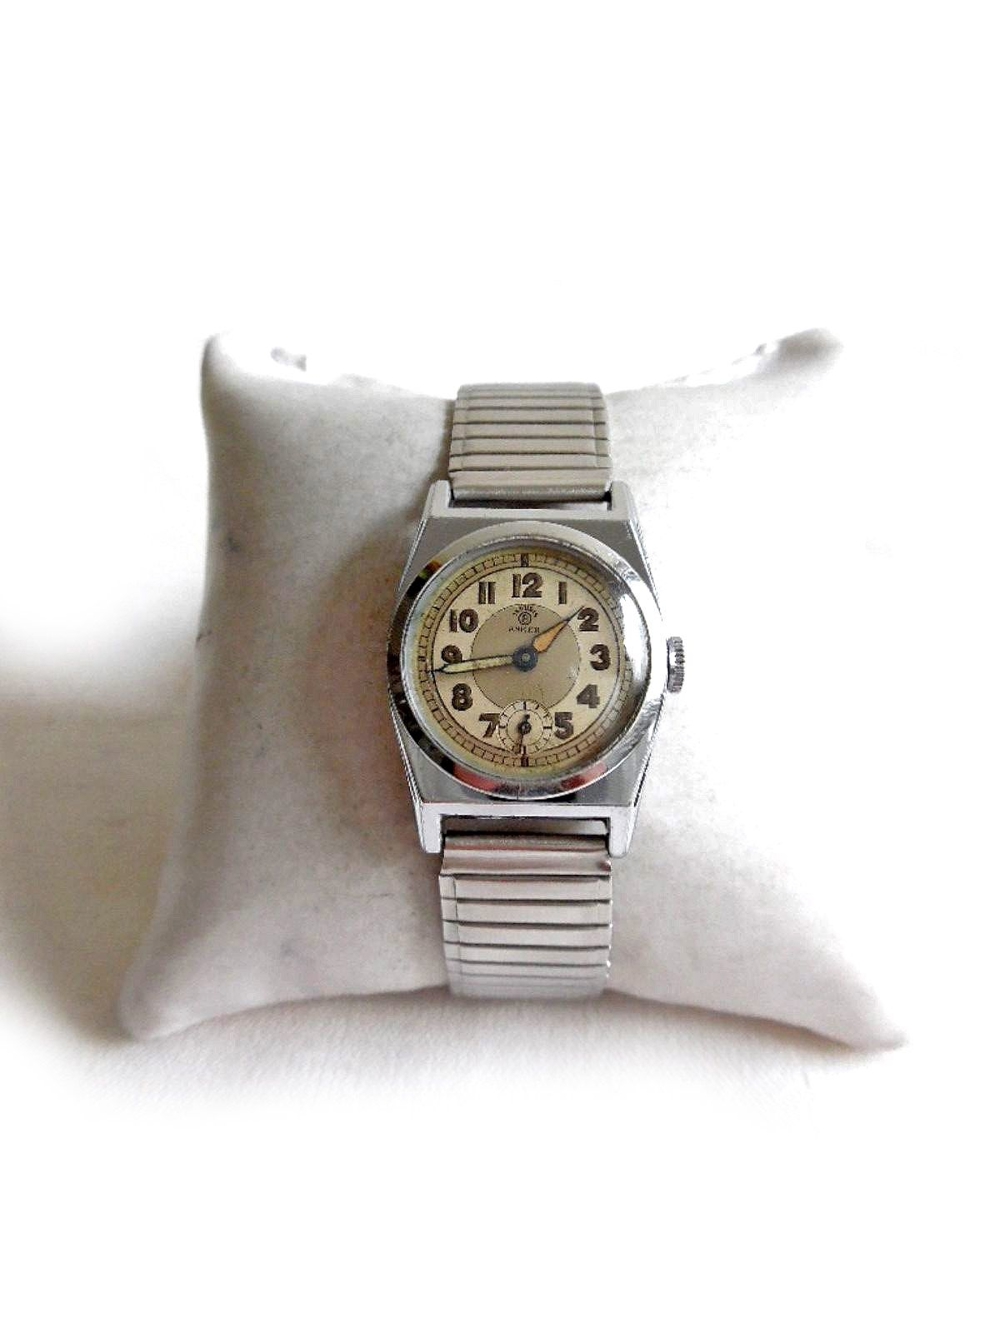 Seltene Armbanduhr von Bifora Anker